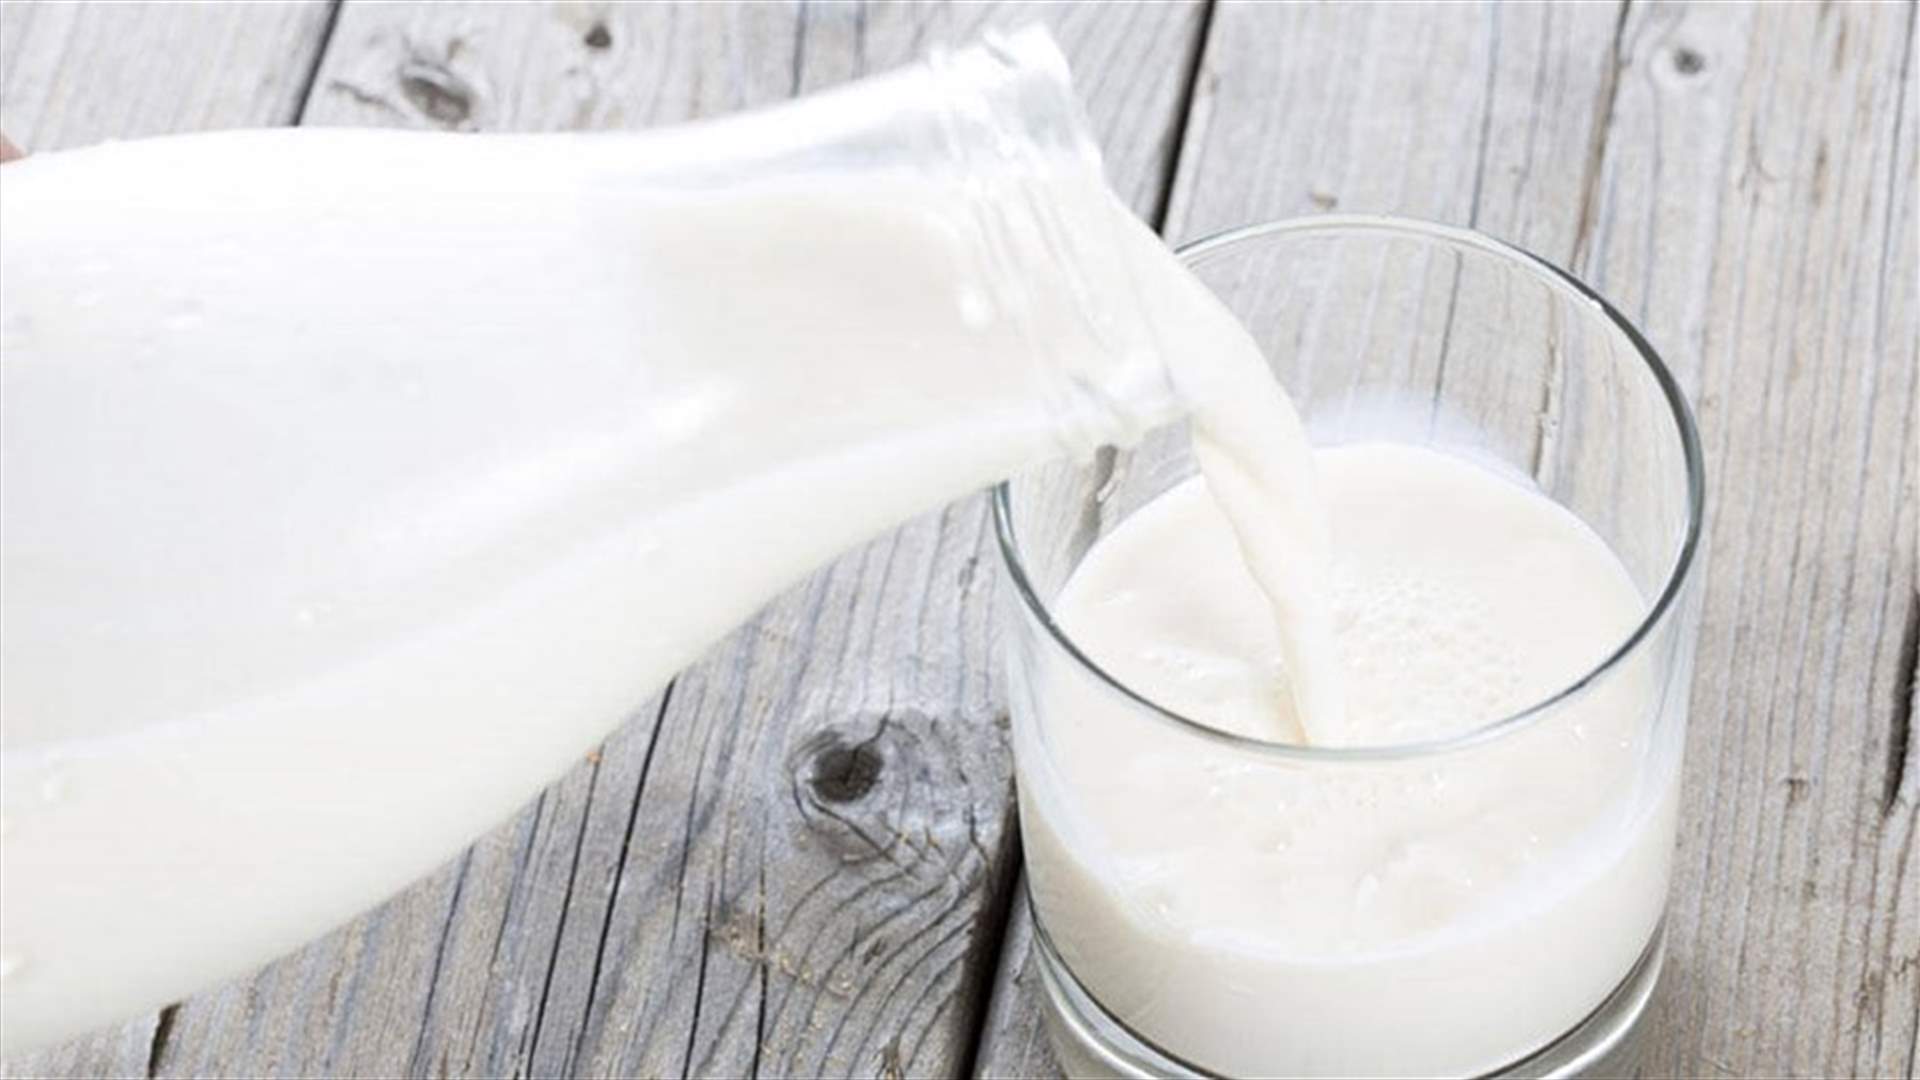 دراسة حديثة... شرب الحليب قليل الدسم يقلل من الشيخوخة المبكرة لدى البالغين